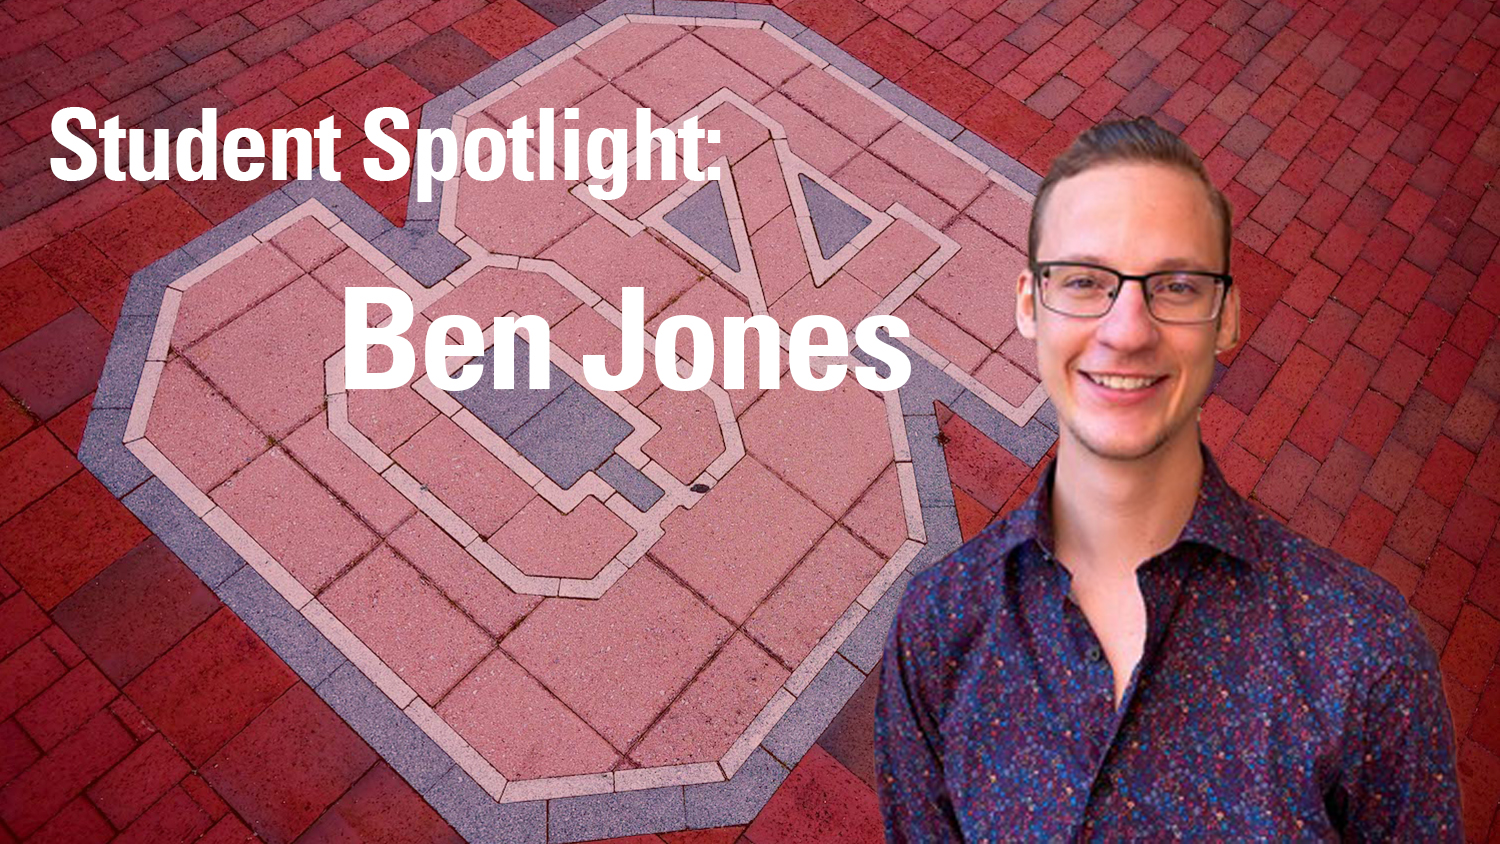 headshot of Ben Jones for news post - text reads "Student Spotlight: Ben Jones"